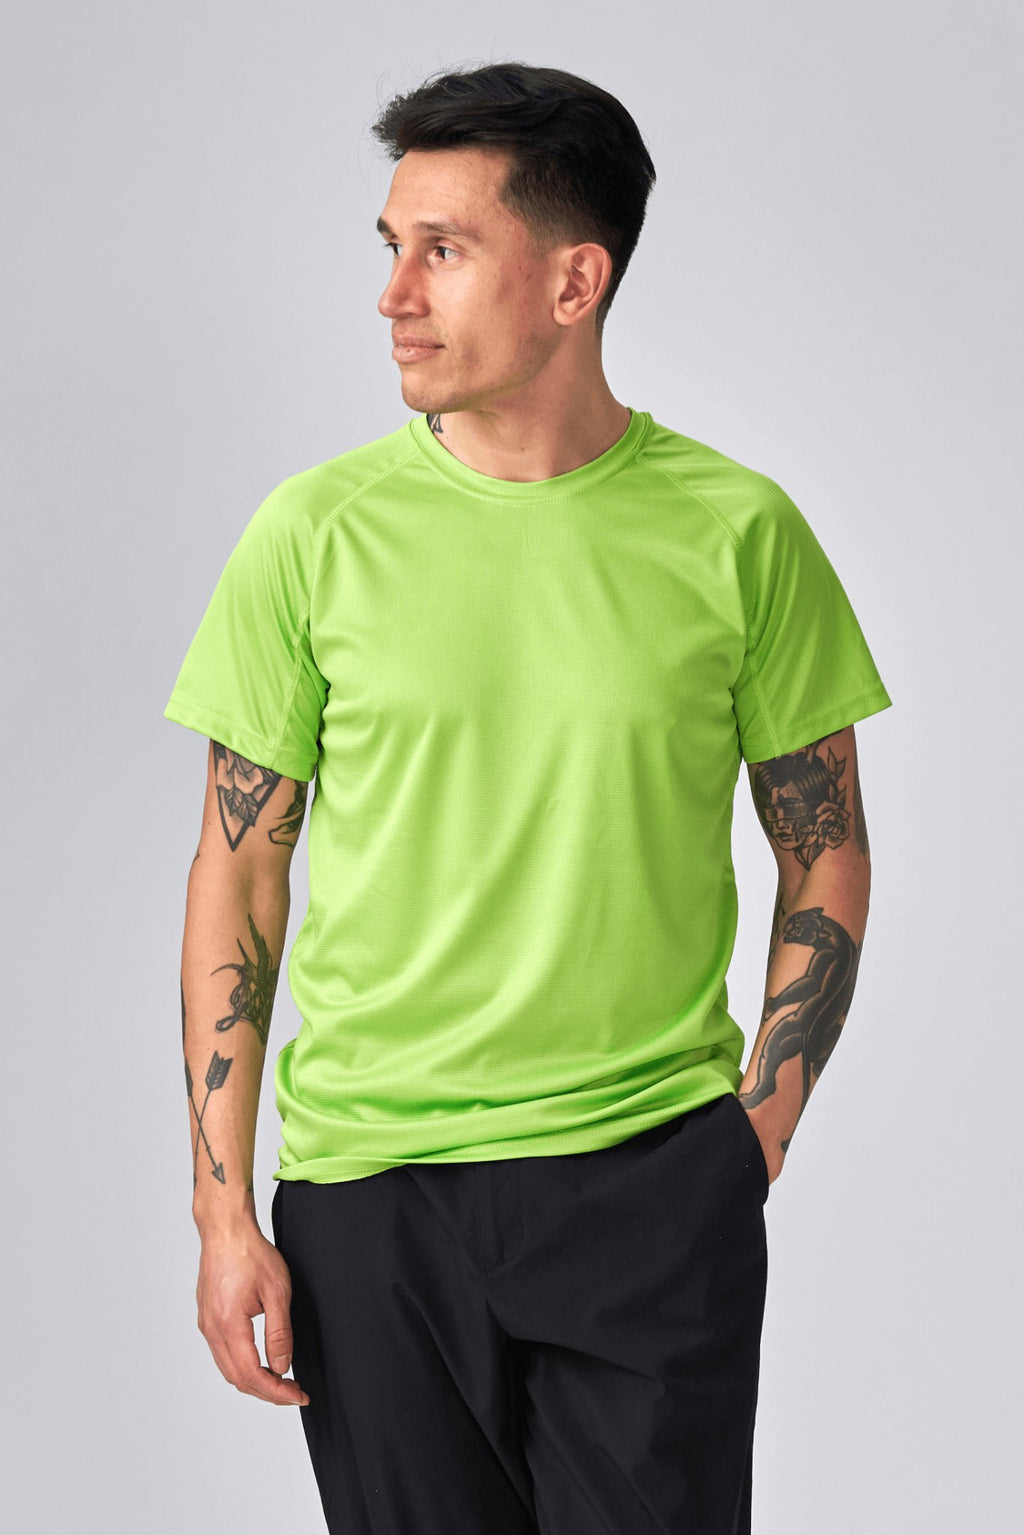 Camiseta de entrenamiento - lima verde